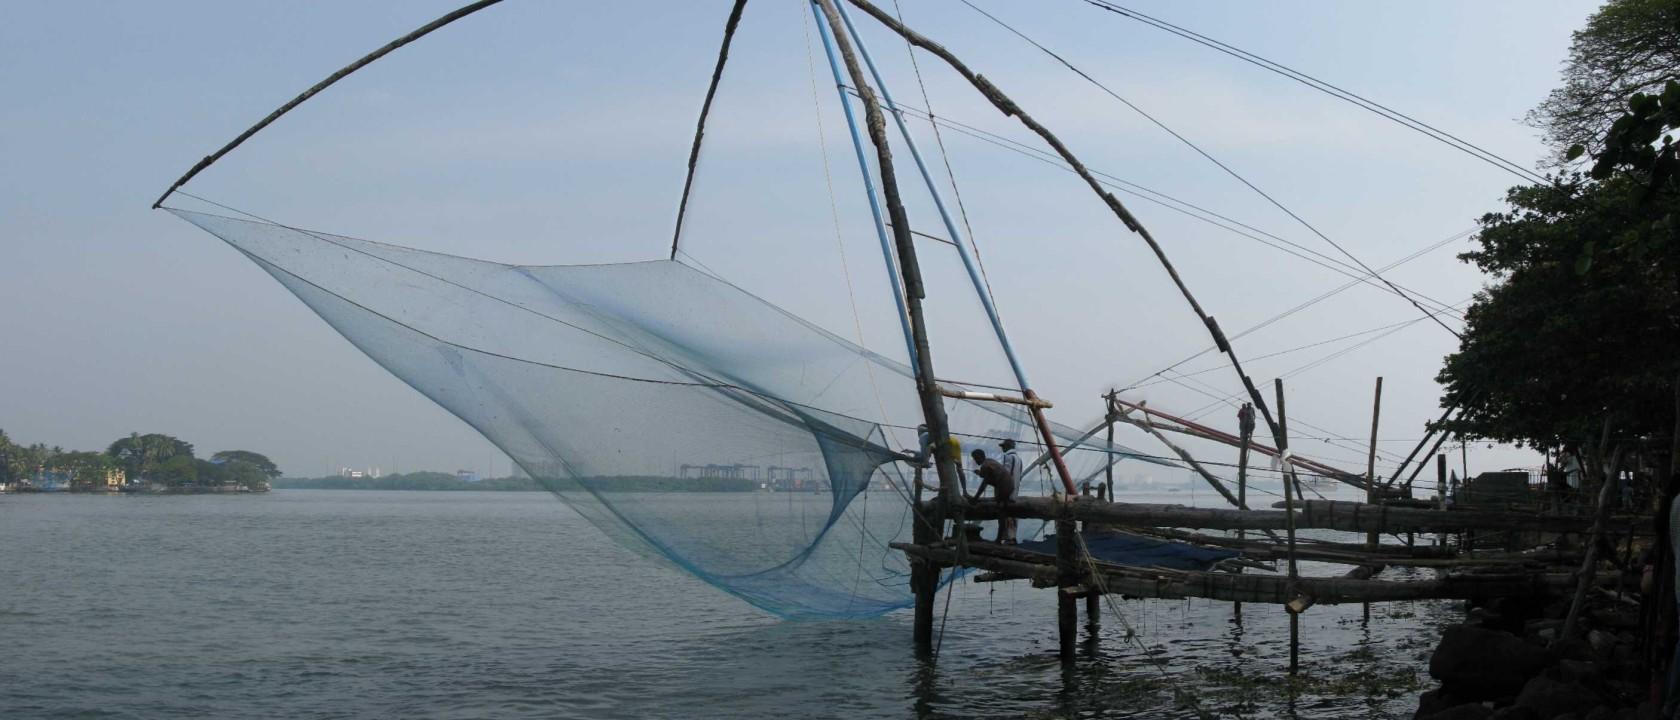 Chinese nets